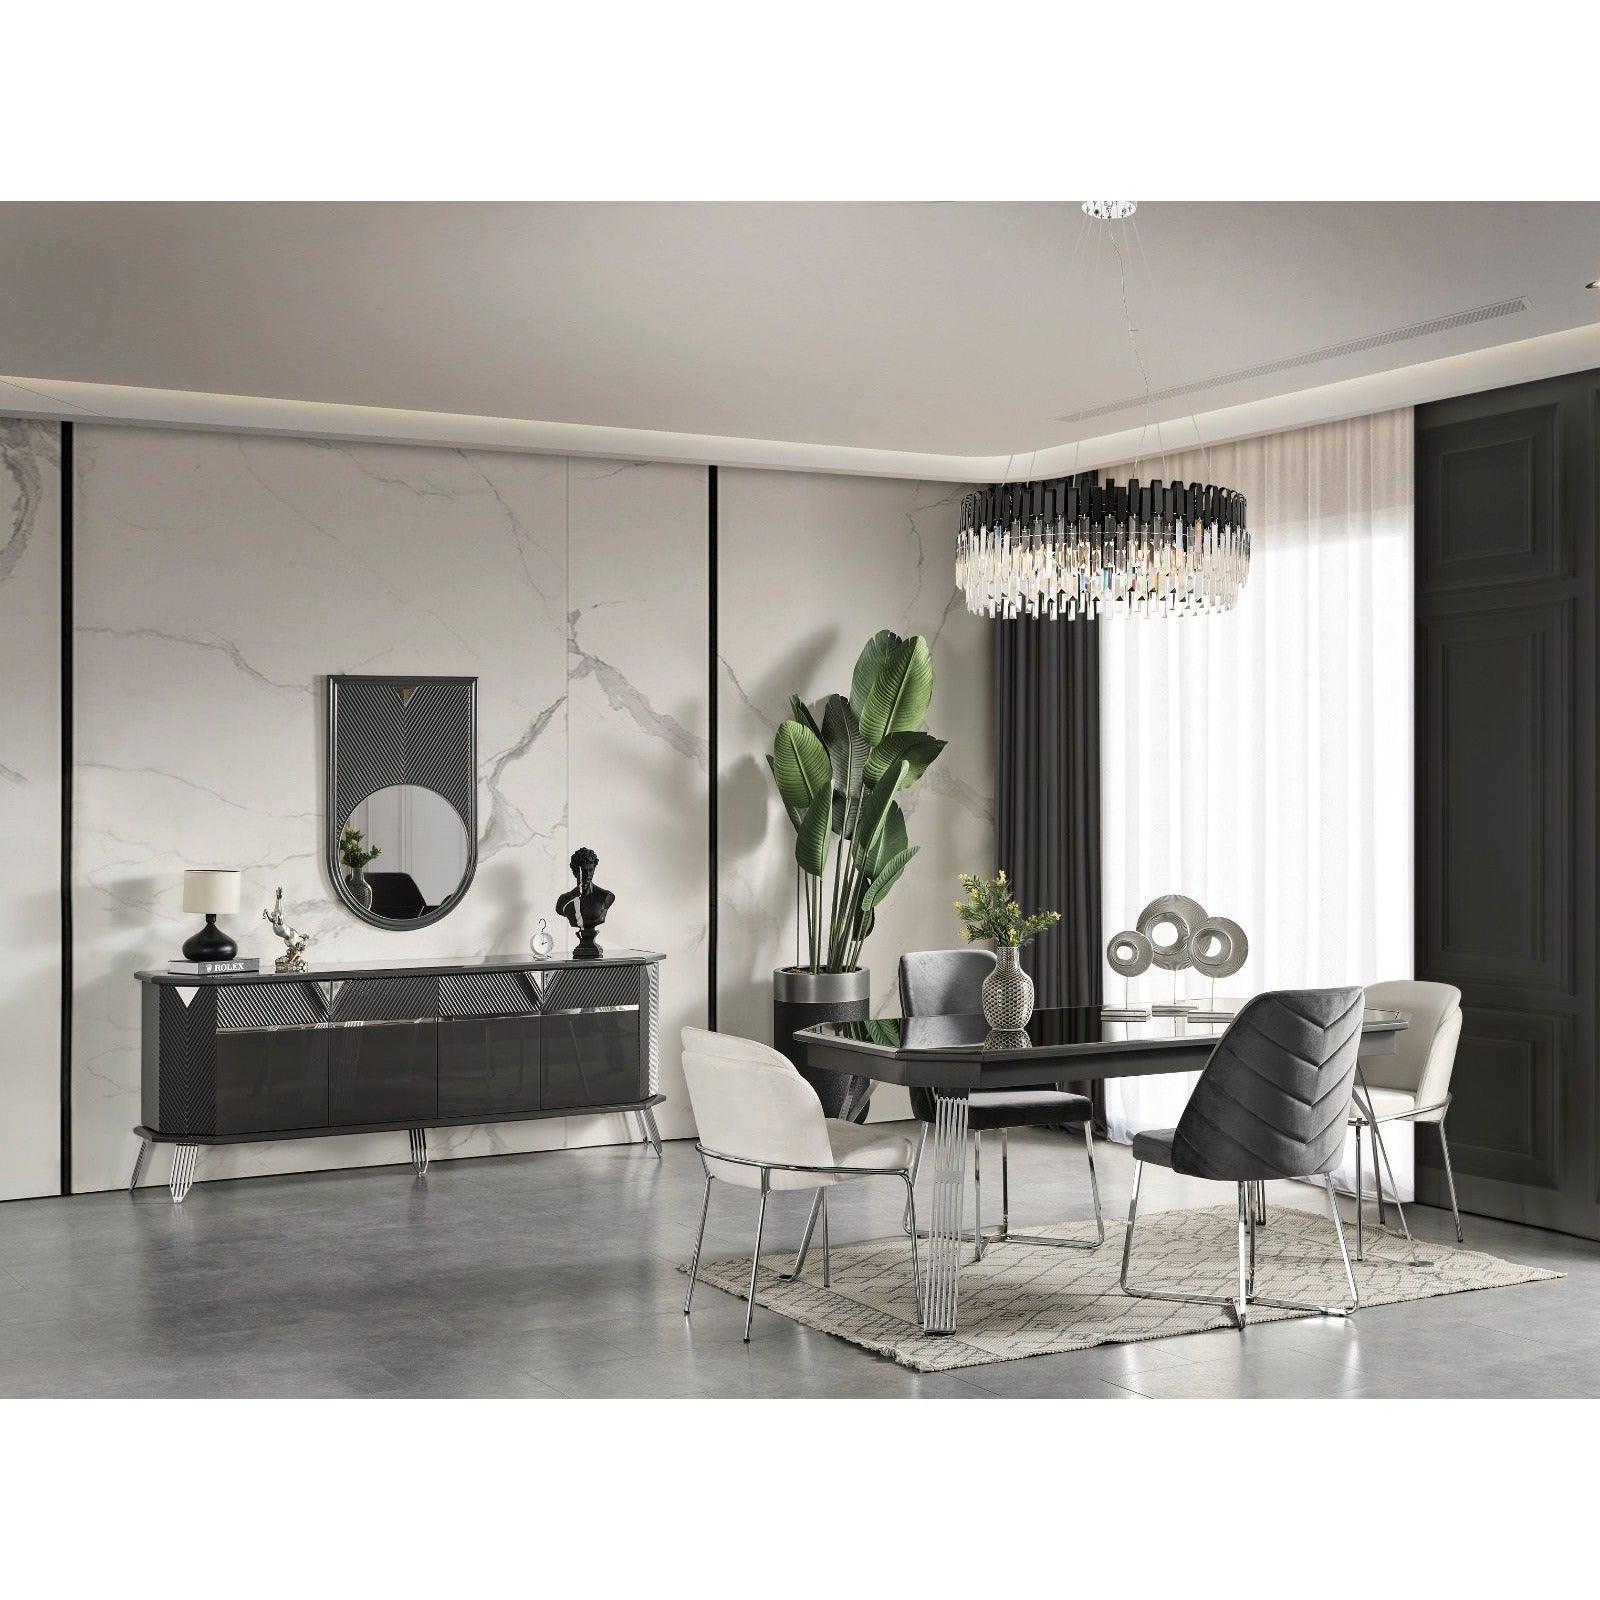 Madrid Matbord - LINE Furniture Group